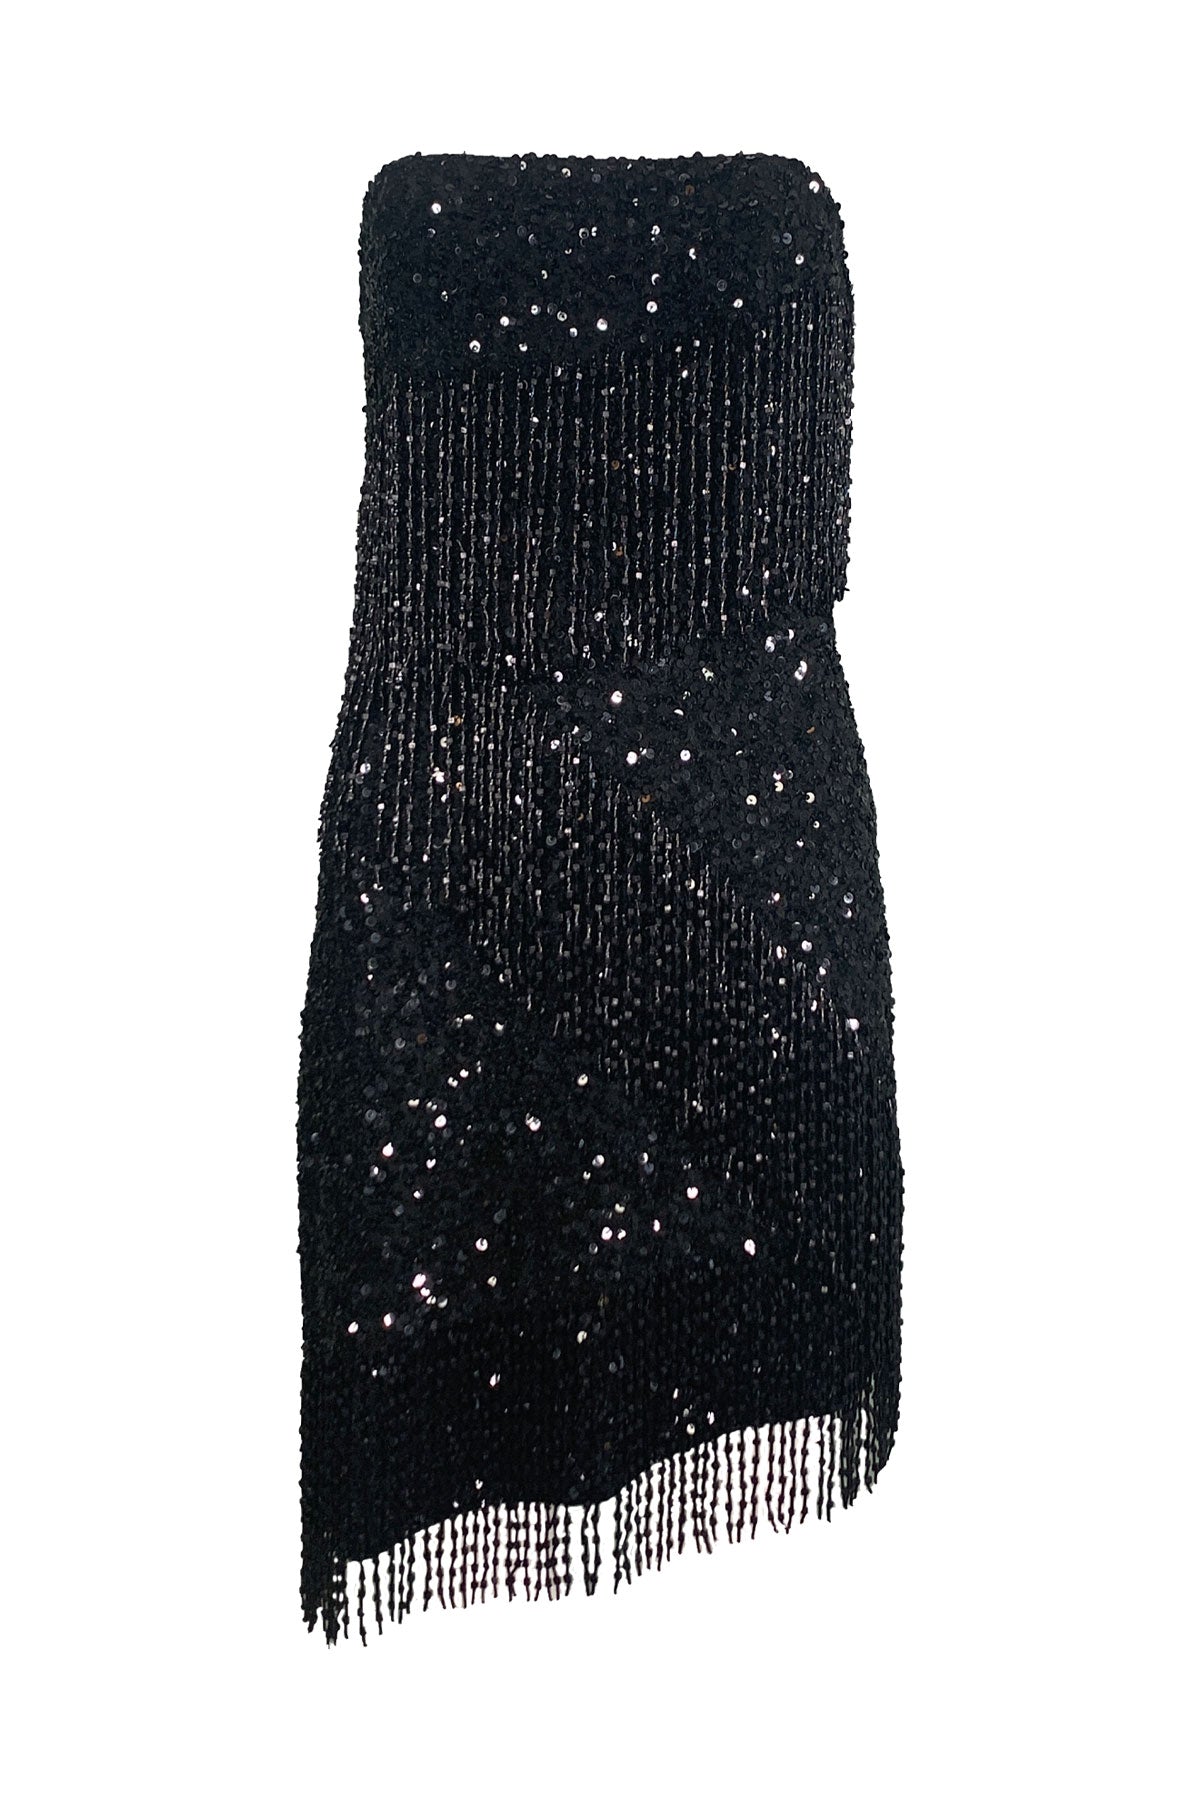 Hallie Dress in Black - shop-olivia.com